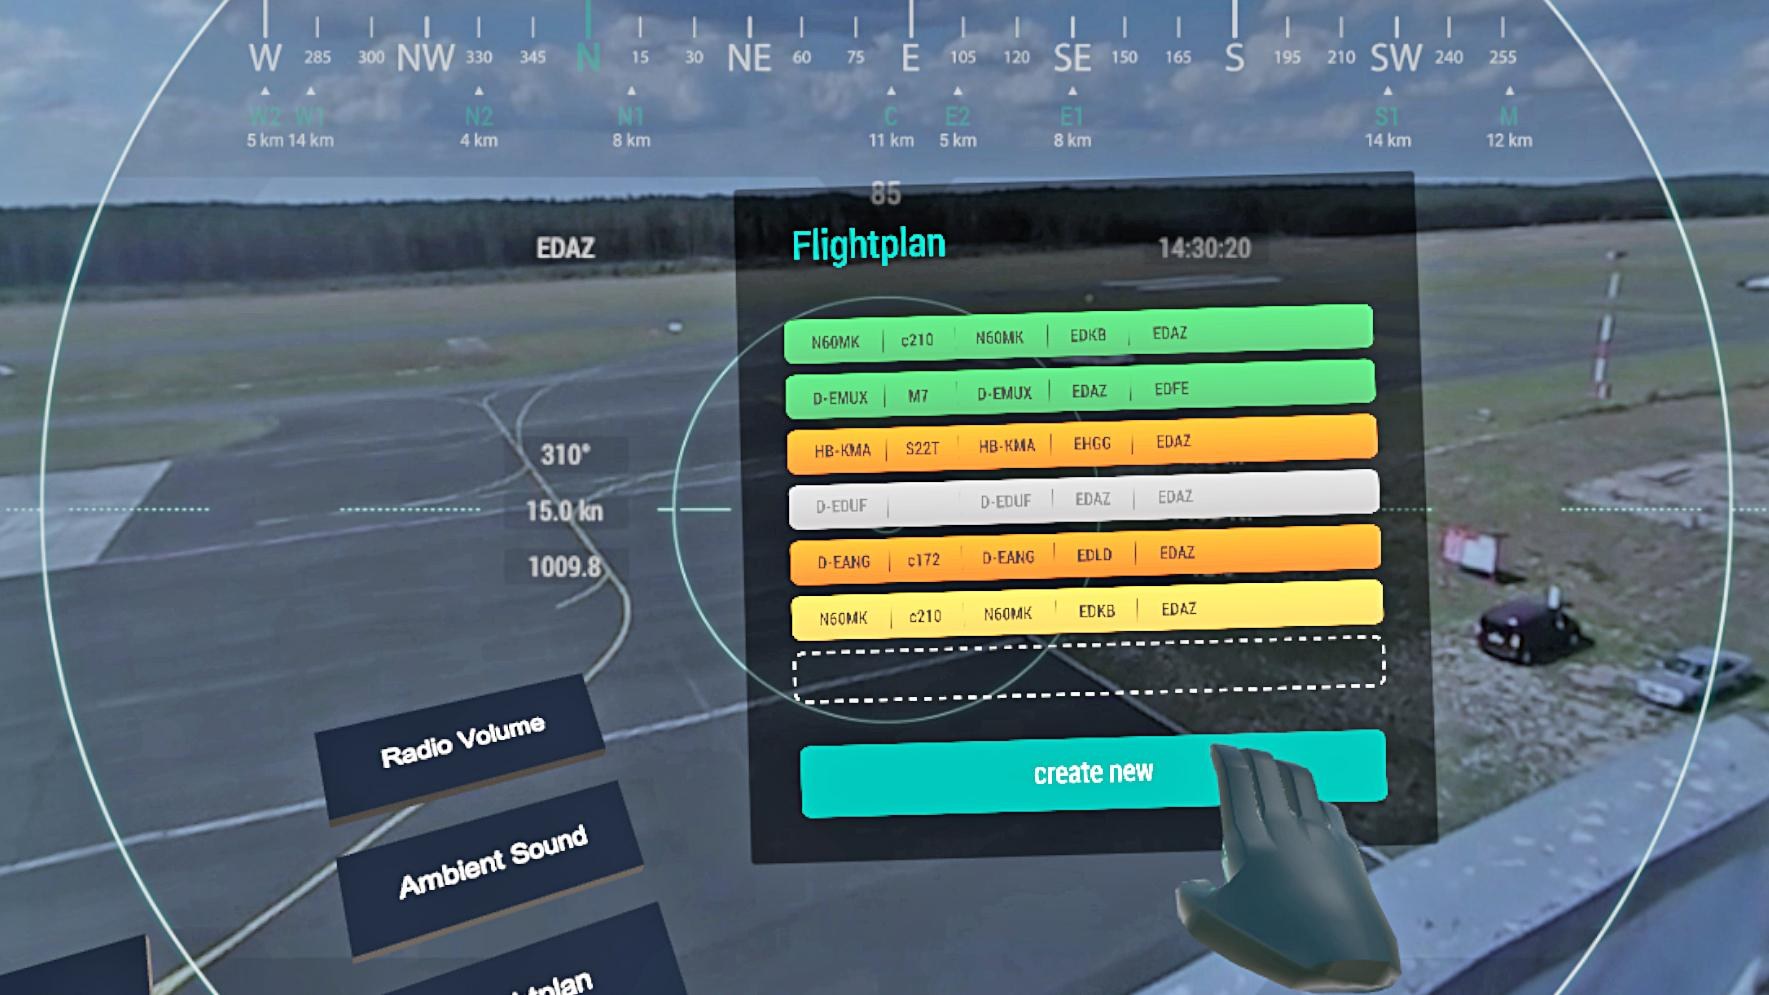 Interaktion des Nutzers mit dem Flugplan in der VR-Umgebung